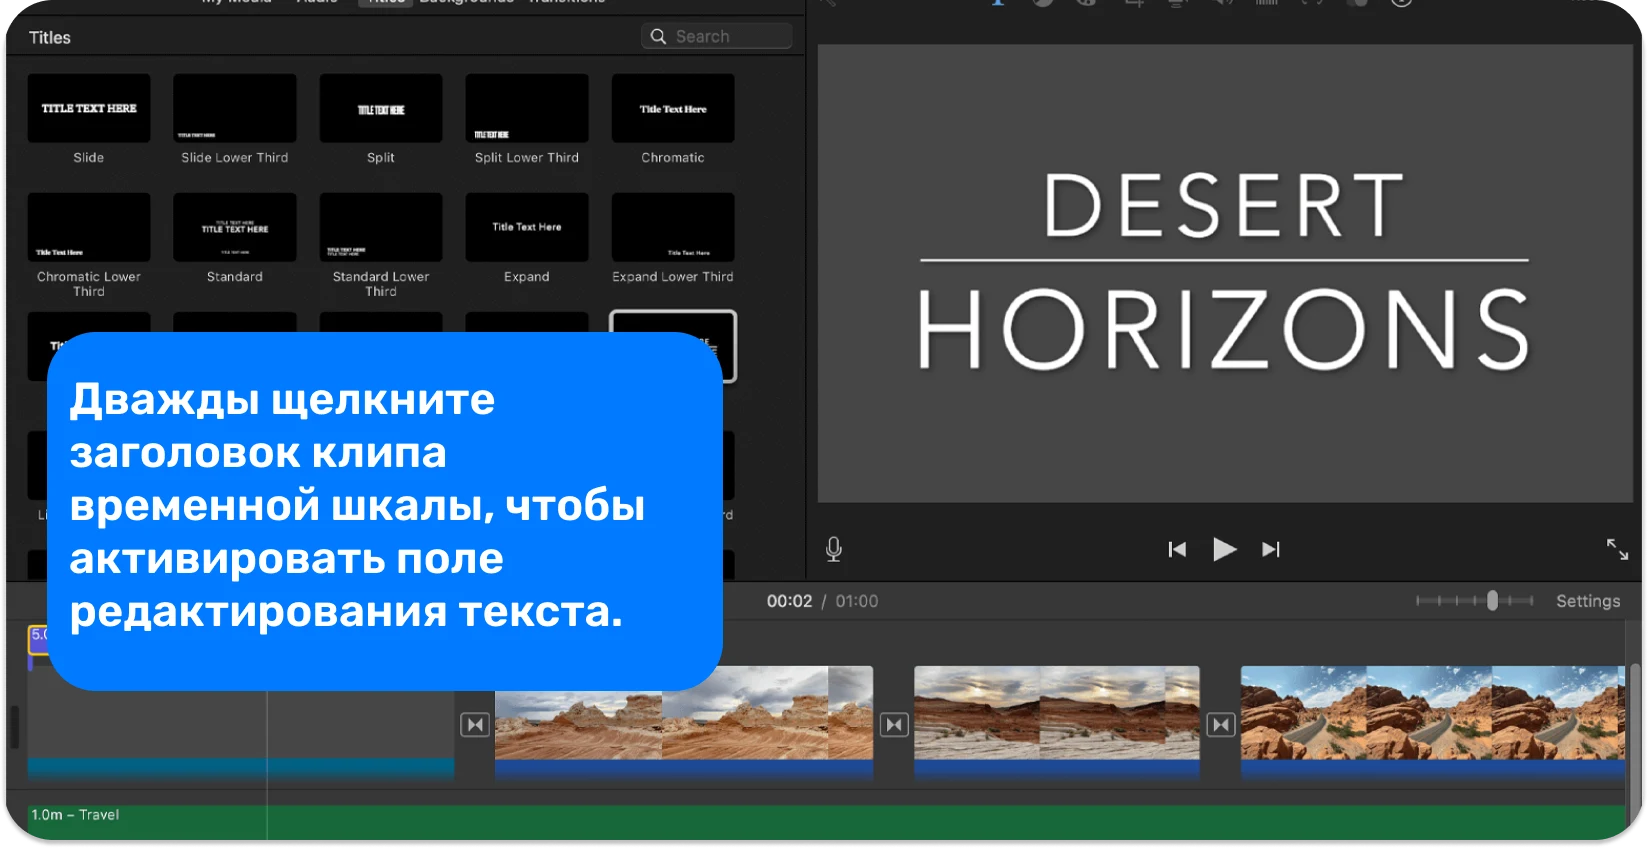 Интерфейс титров iMovie, отображающий различные текстовые стили и форматы для добавления профессиональных титров в видеопроекты.
